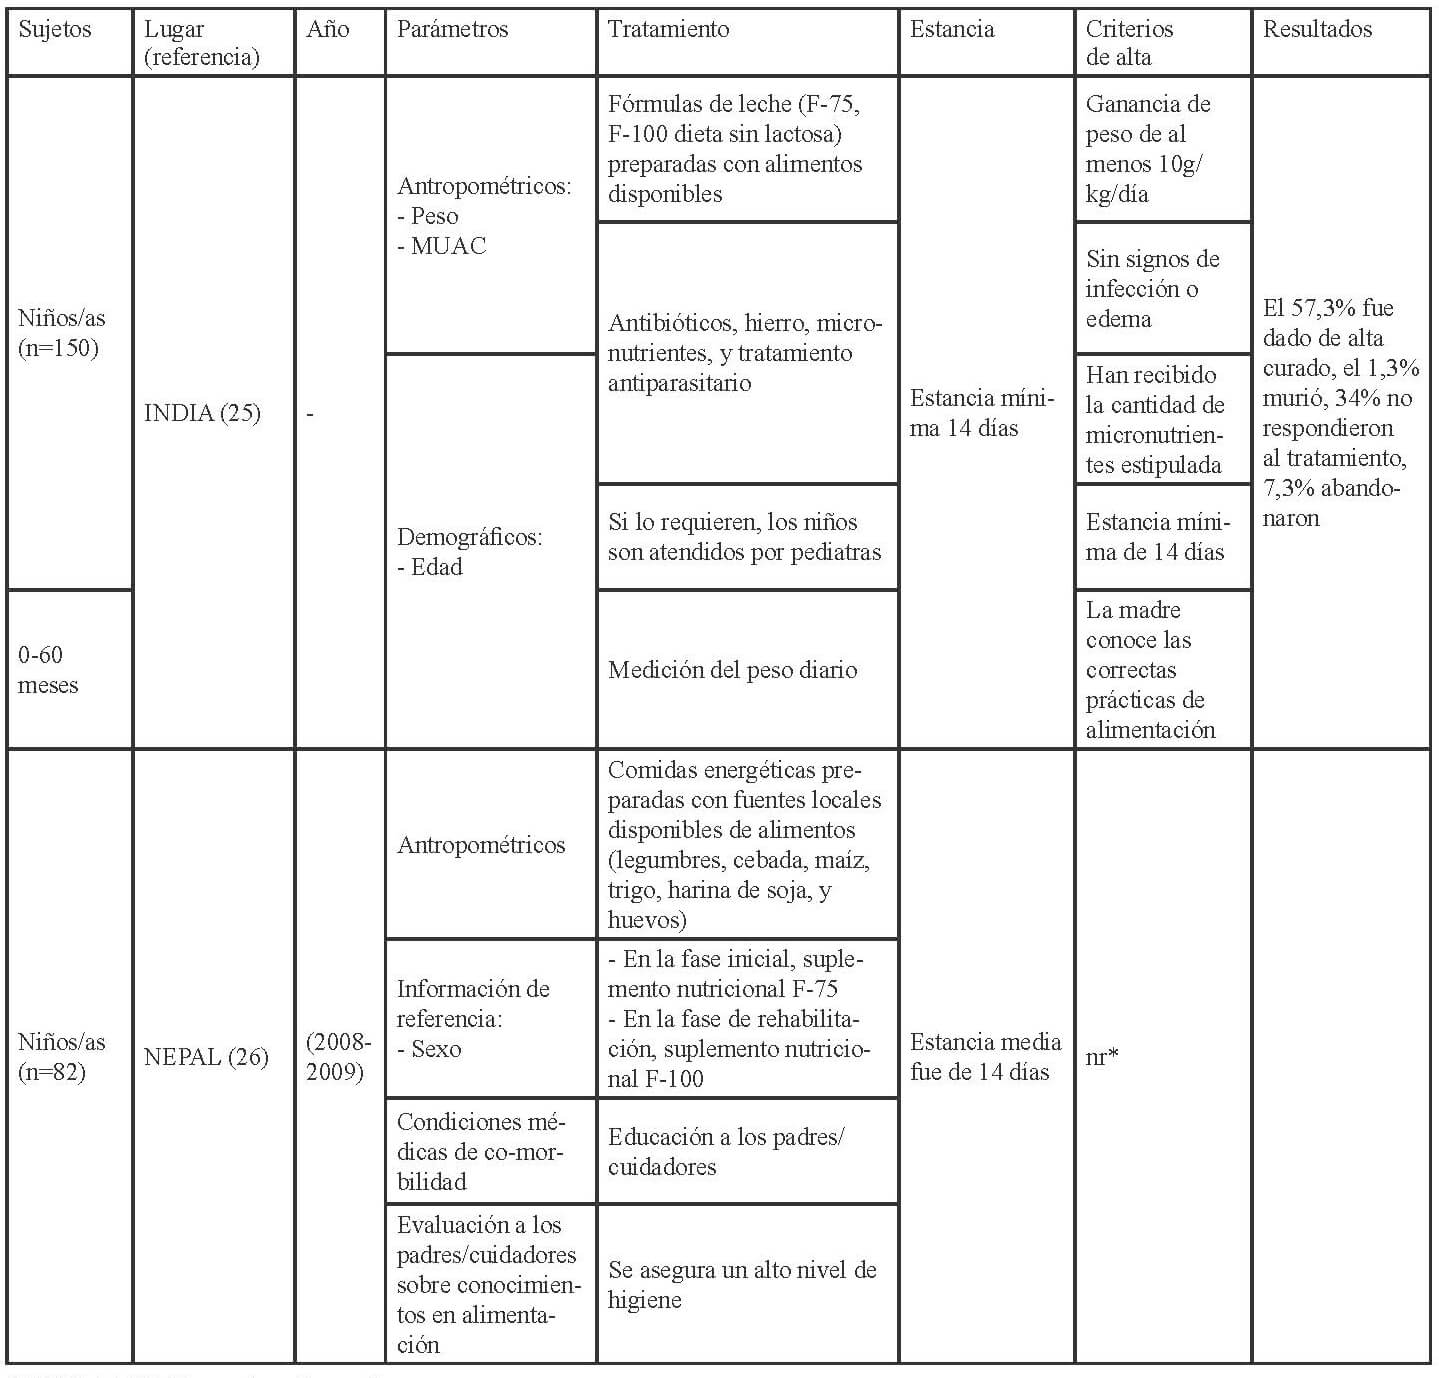 Tabla 3. Características sobre los CRN en Asia (continuación).